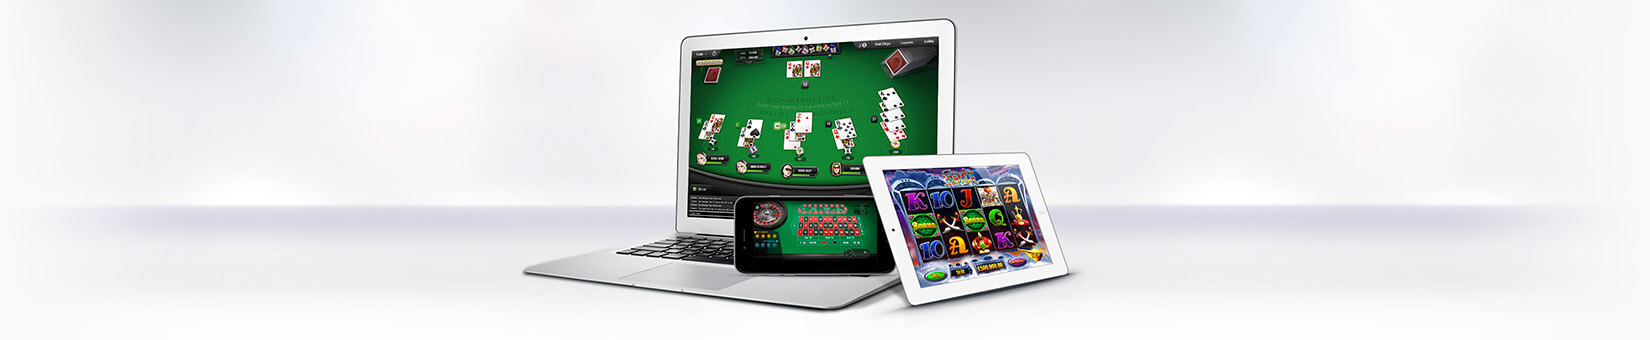 Pokerstars Casino 368893